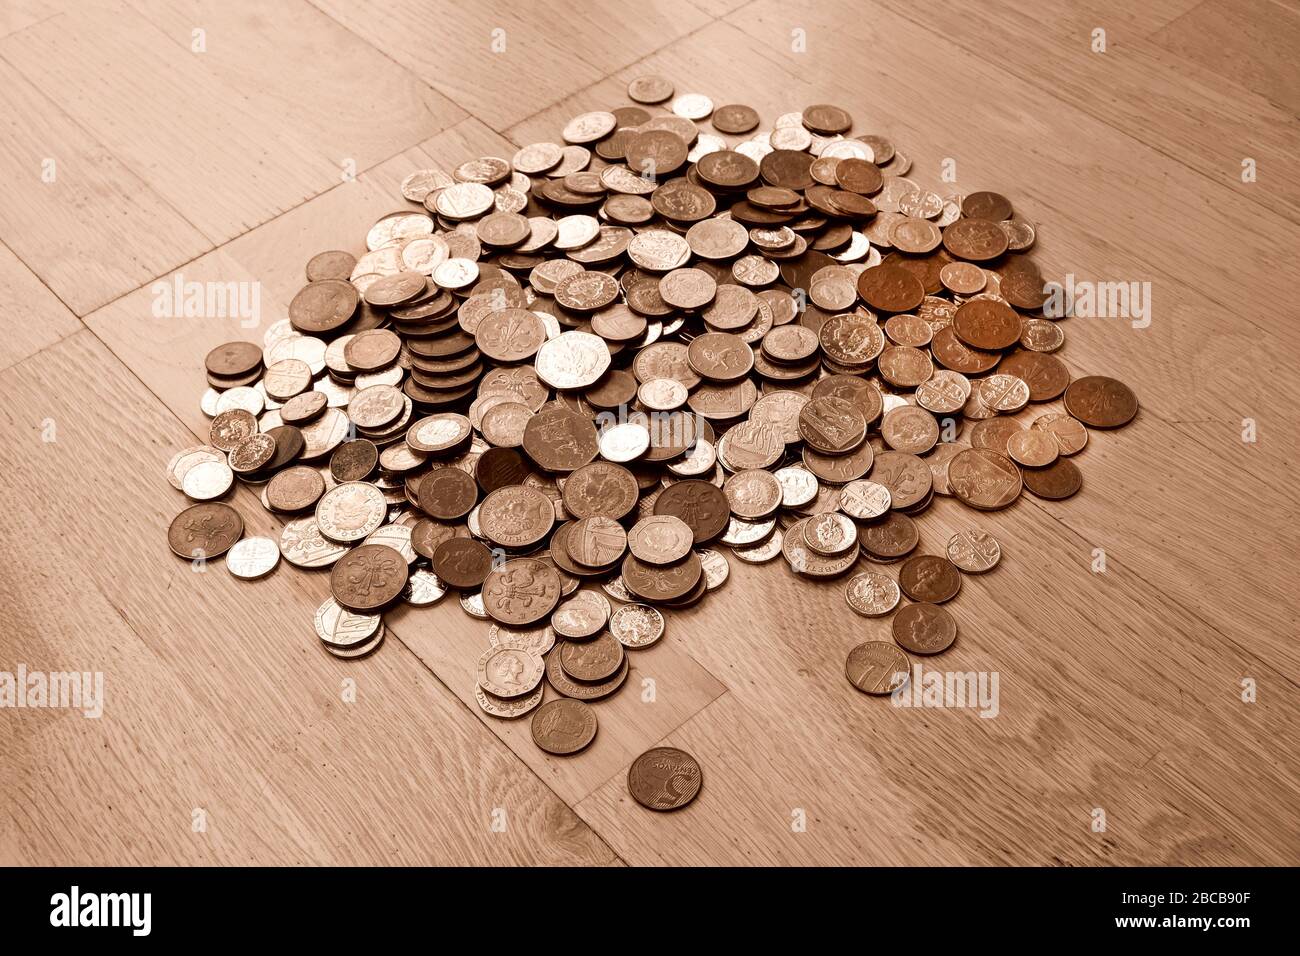 Moneda del Reino Unido, cientos de monedas británicas de cobre y plata apiladas aleatoriamente una encima de la otra, monedas de una libra, cincuenta pence, veinte pence, dos p Foto de stock